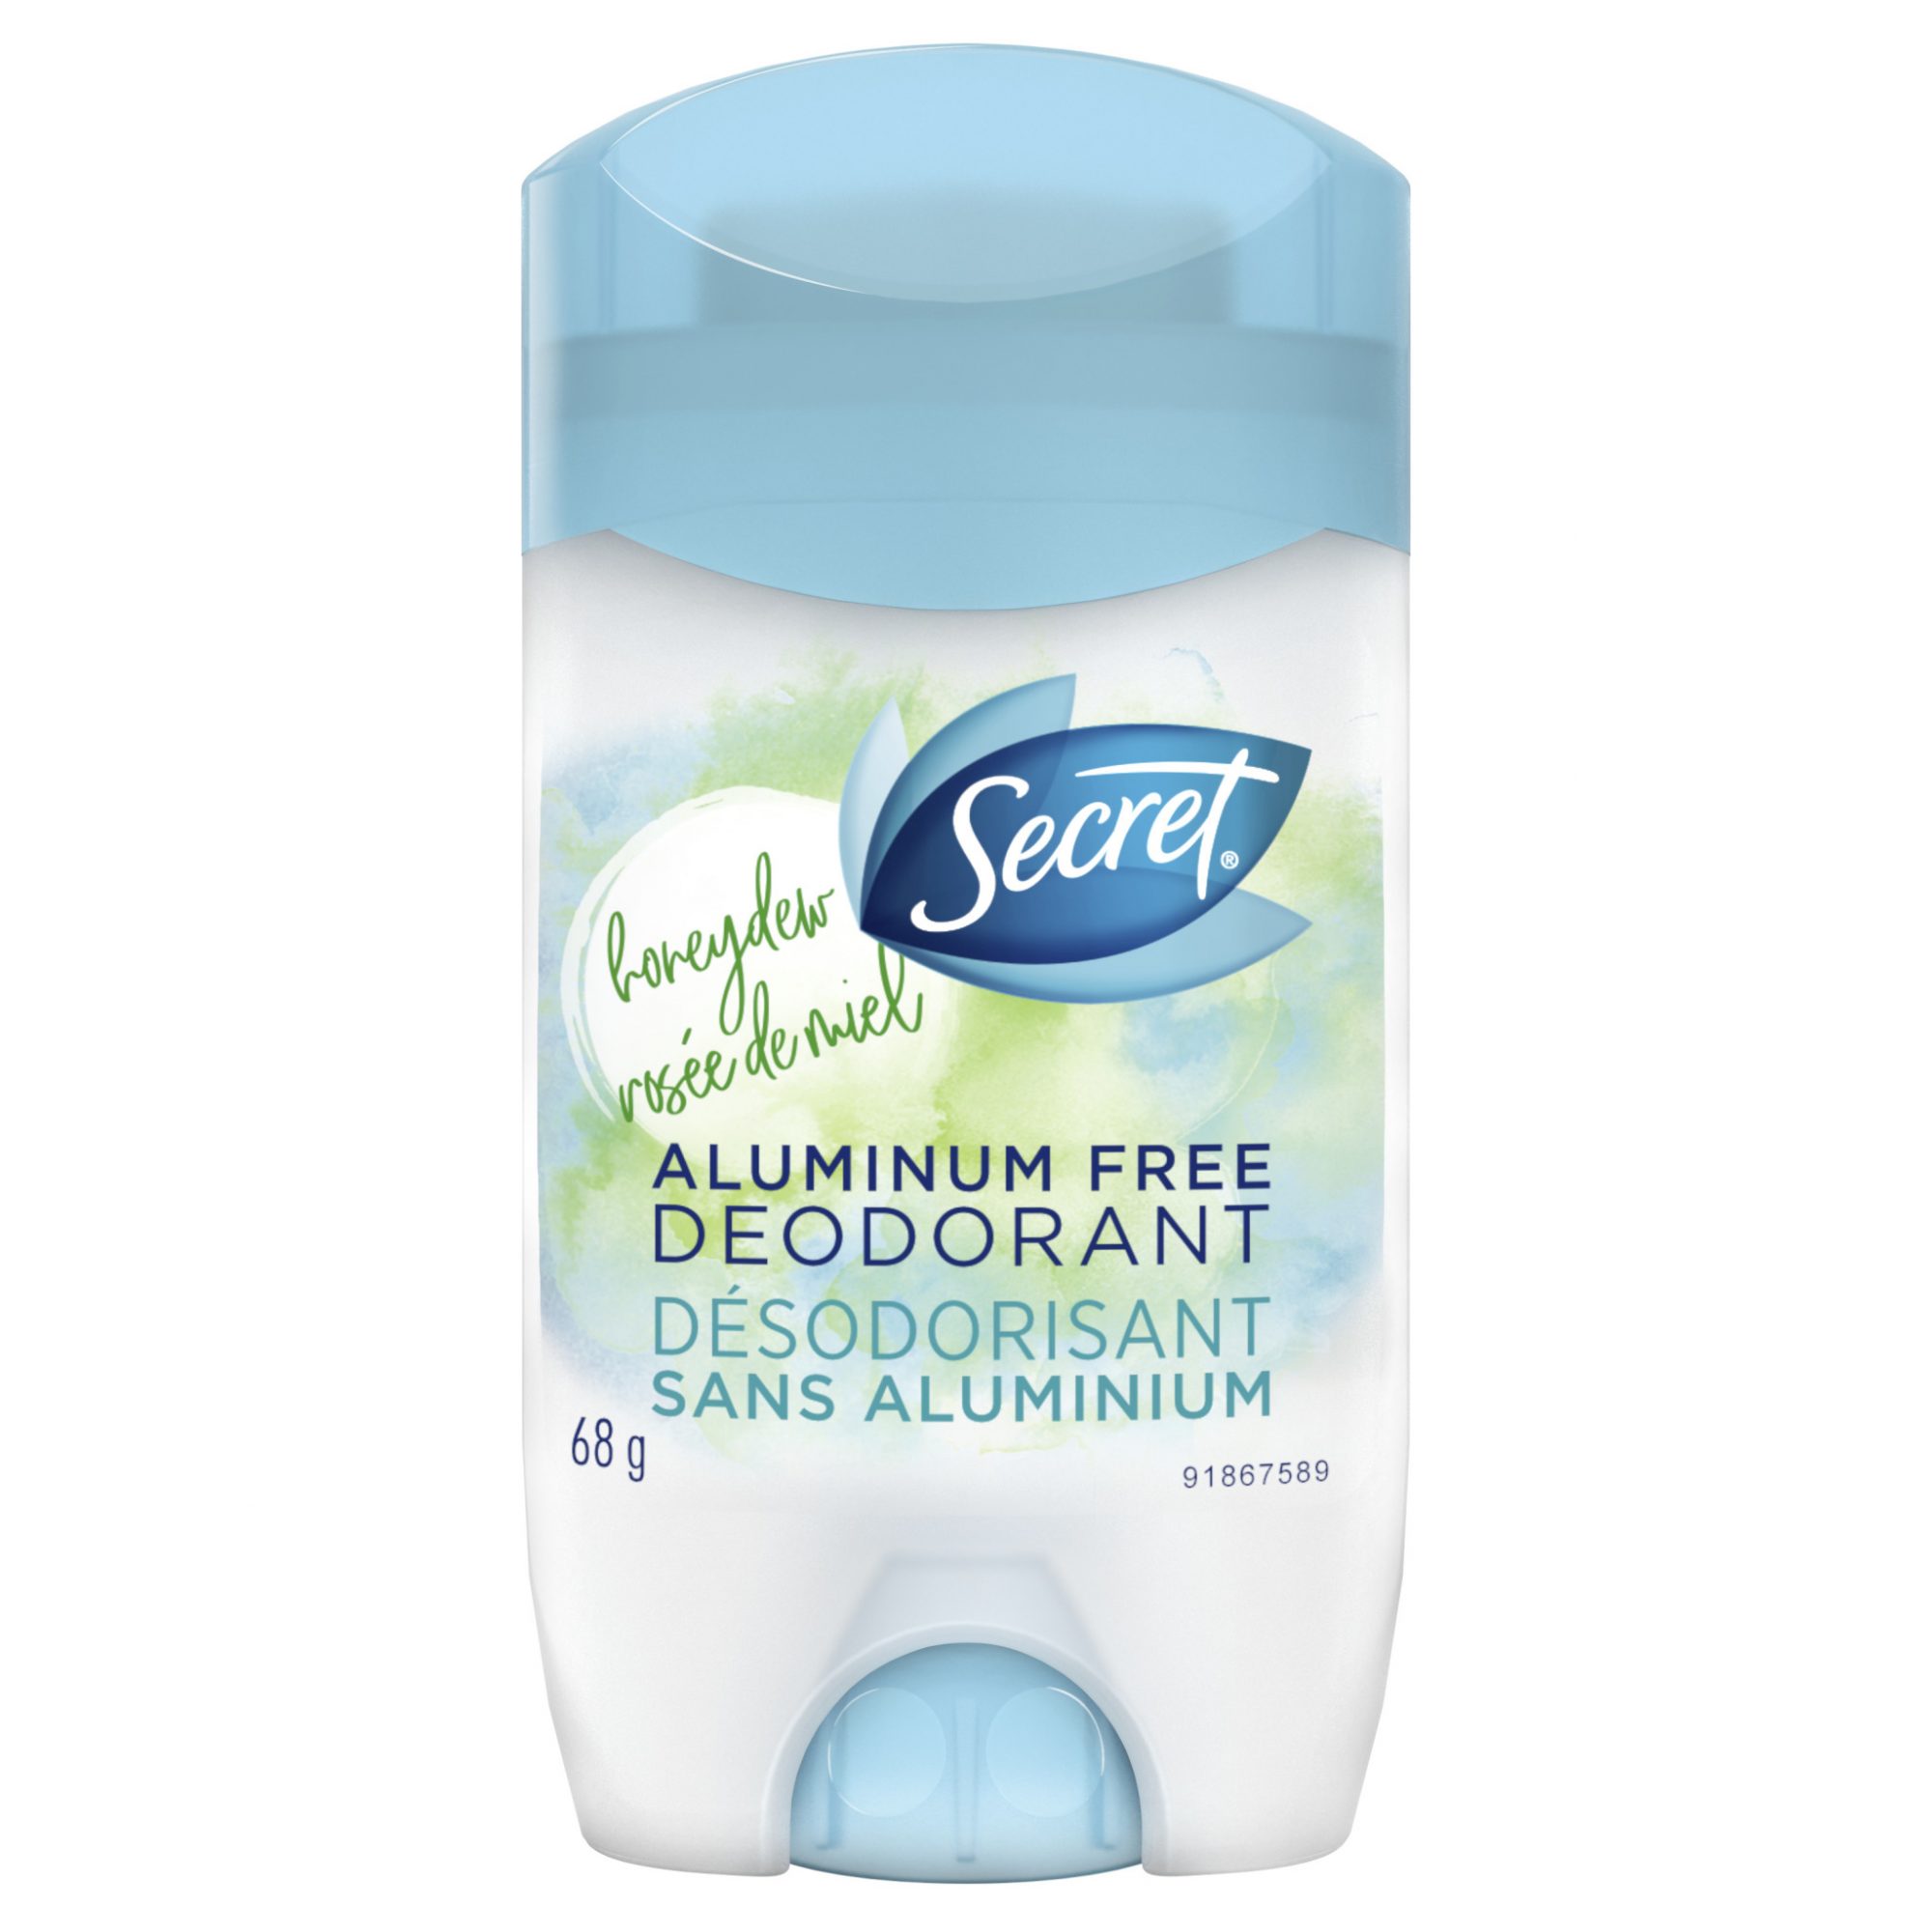 Secret aluminum-free deodorant